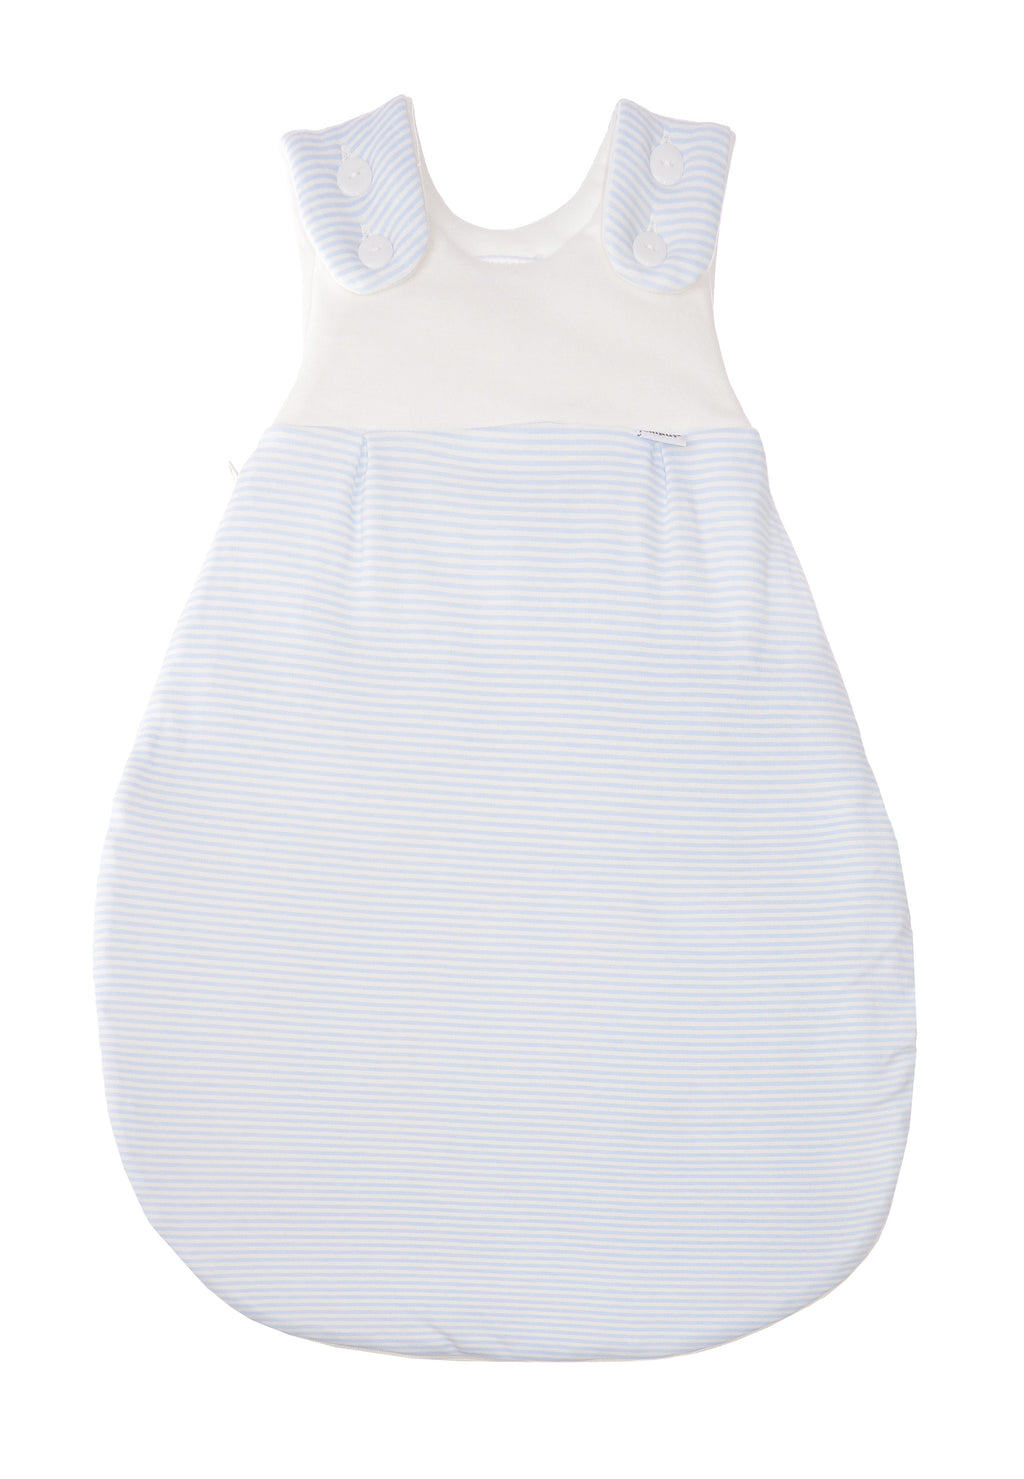 Schlafsack für Babys in unterschiedlichen Längen mit Knöpfen und Reißverschluss an der Seite. Design:  hellblaue Streifen